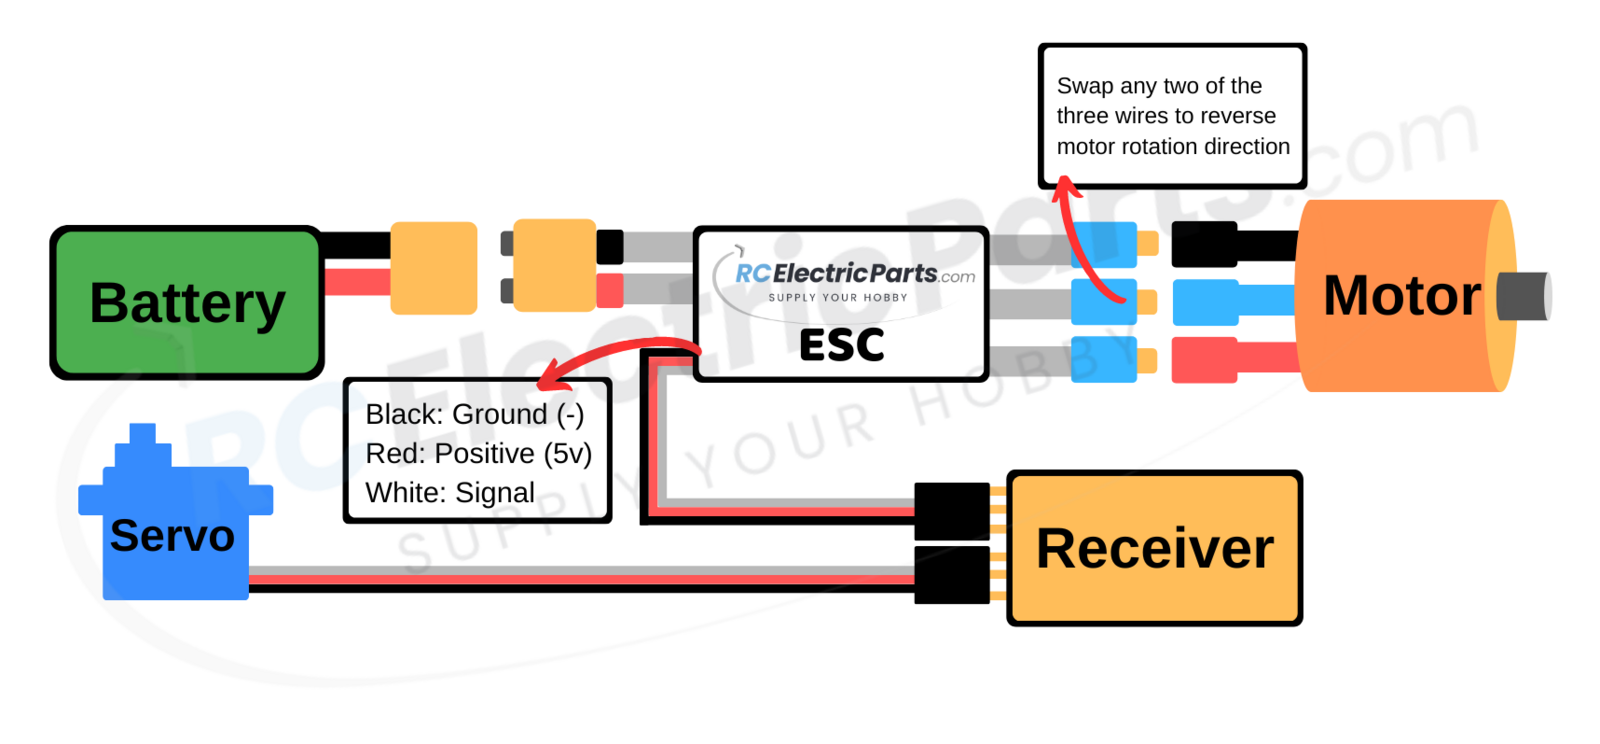 rcelectricparts-com-defiant-esc-series-wiring-diagram_orig.png